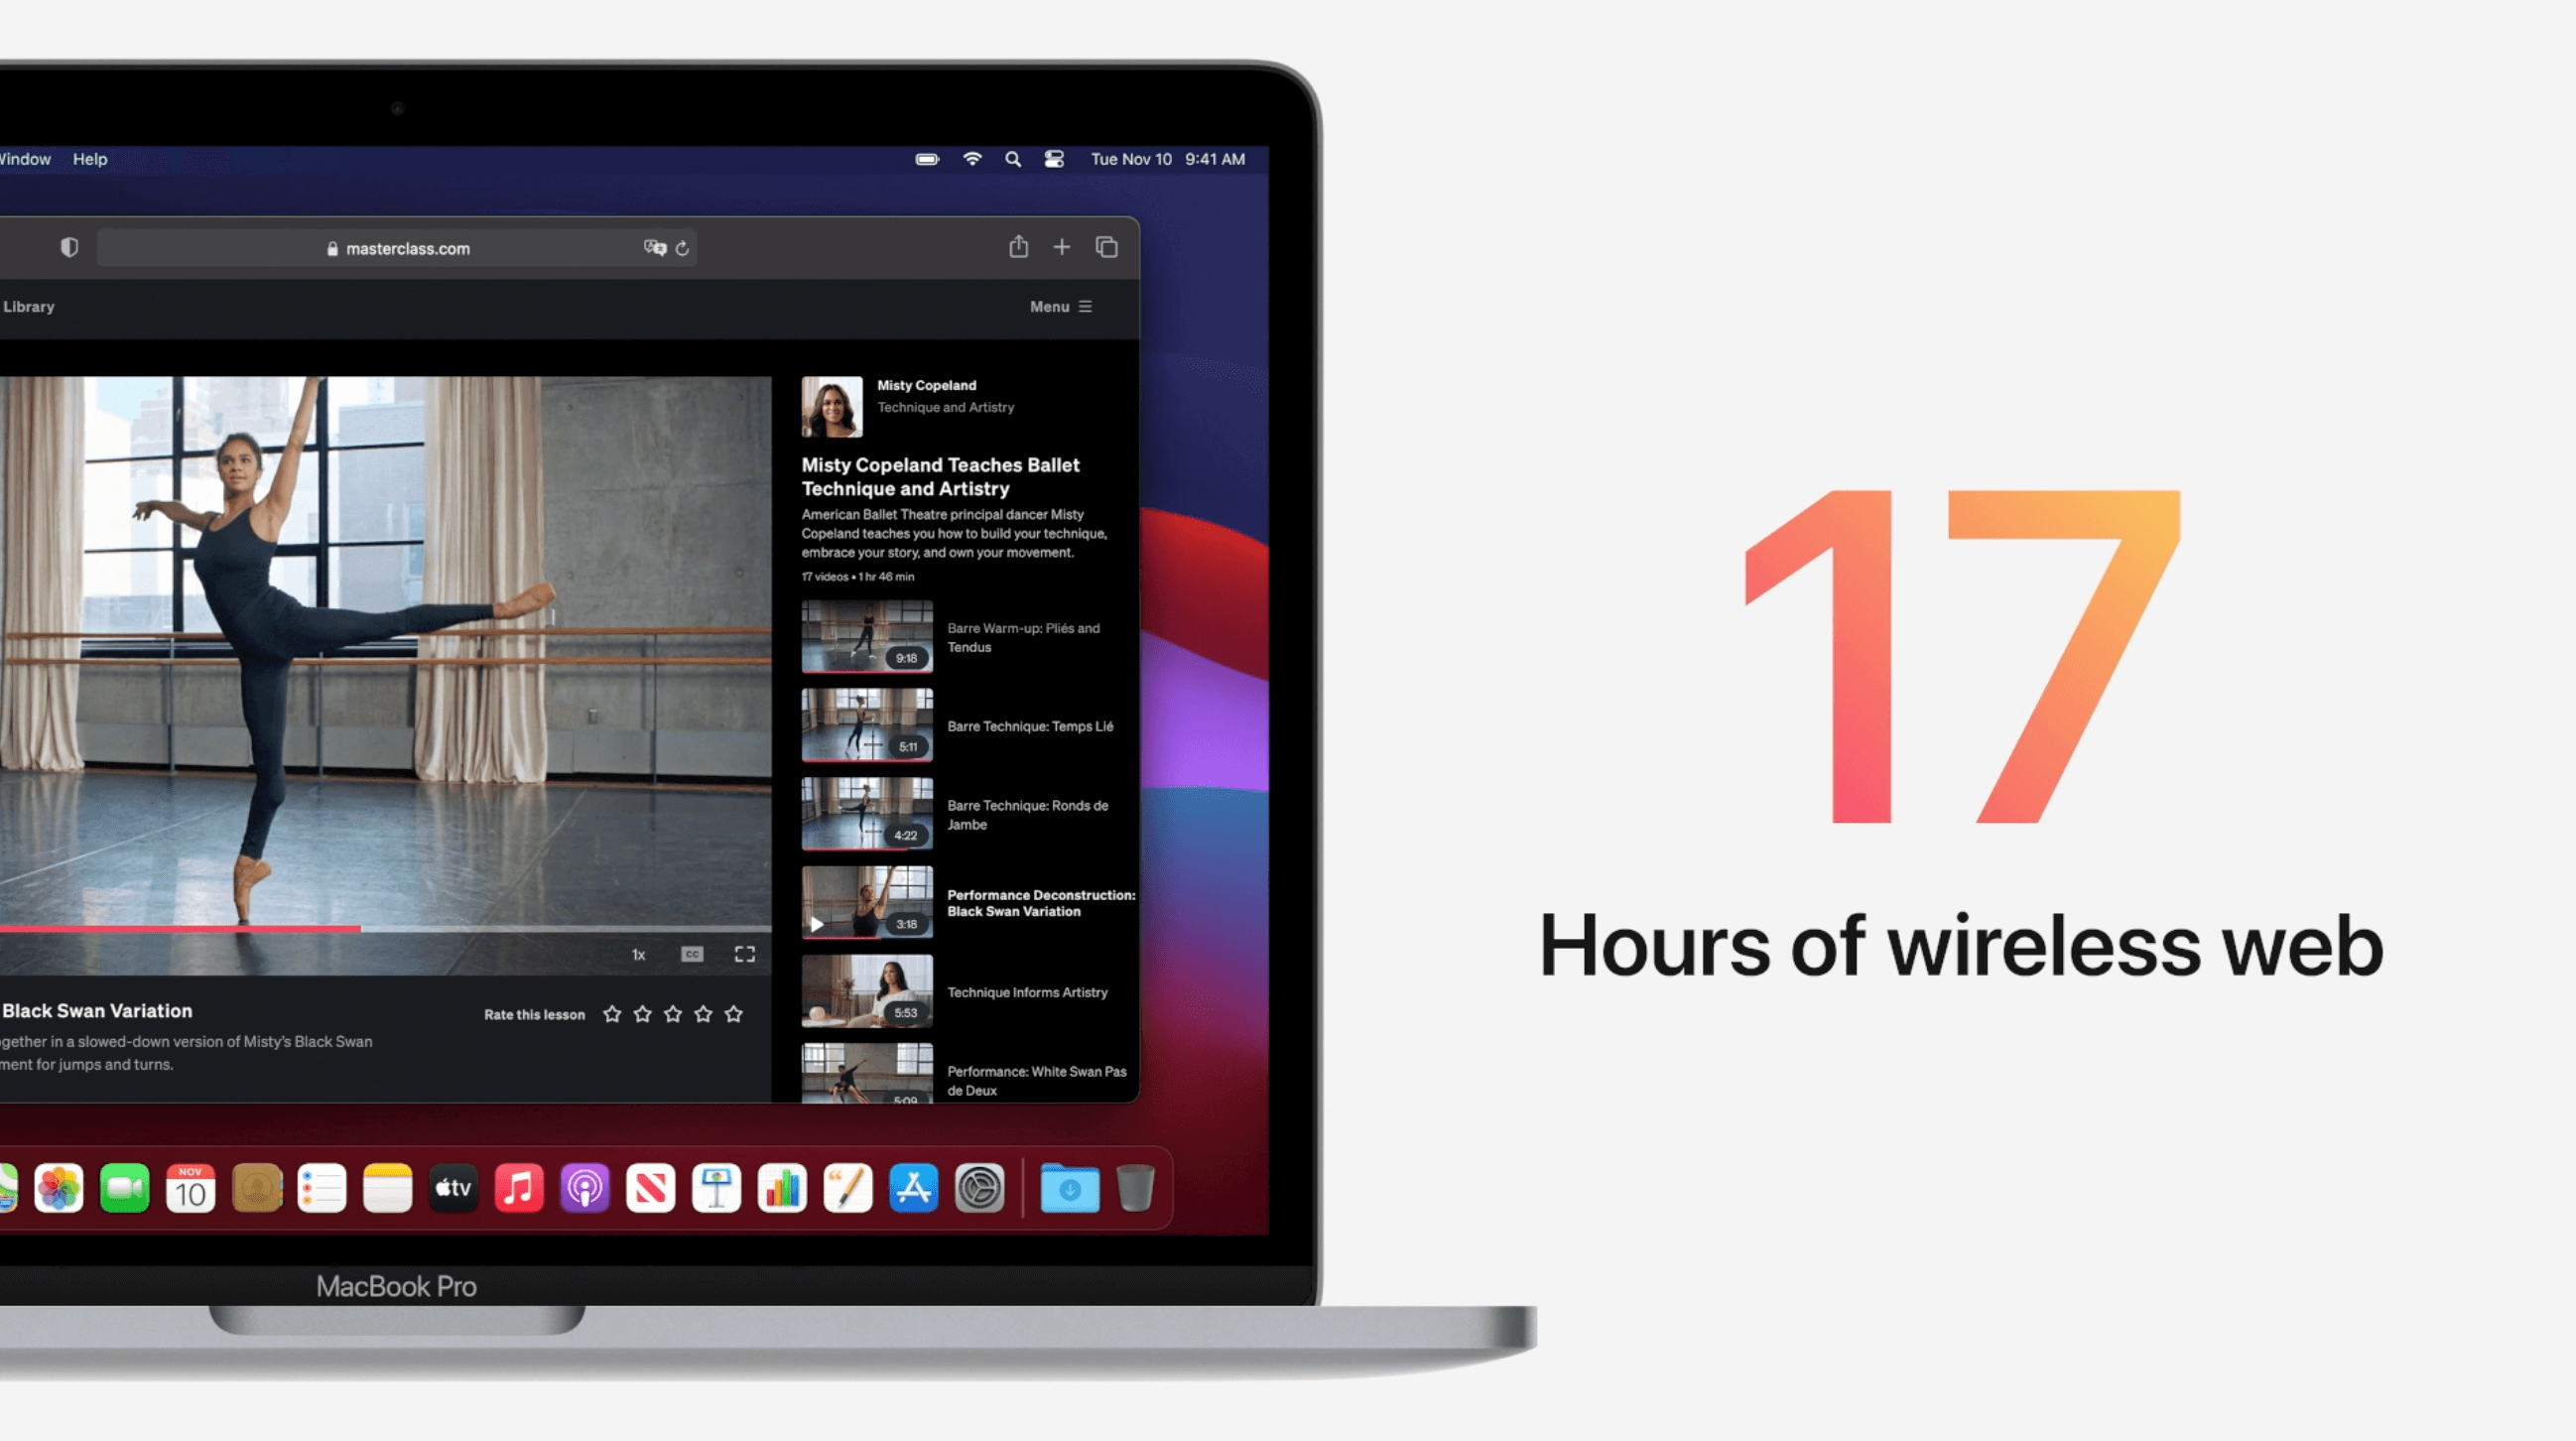 De MacBook Pro kan 17 uur mee als je het gebruikt voor internet